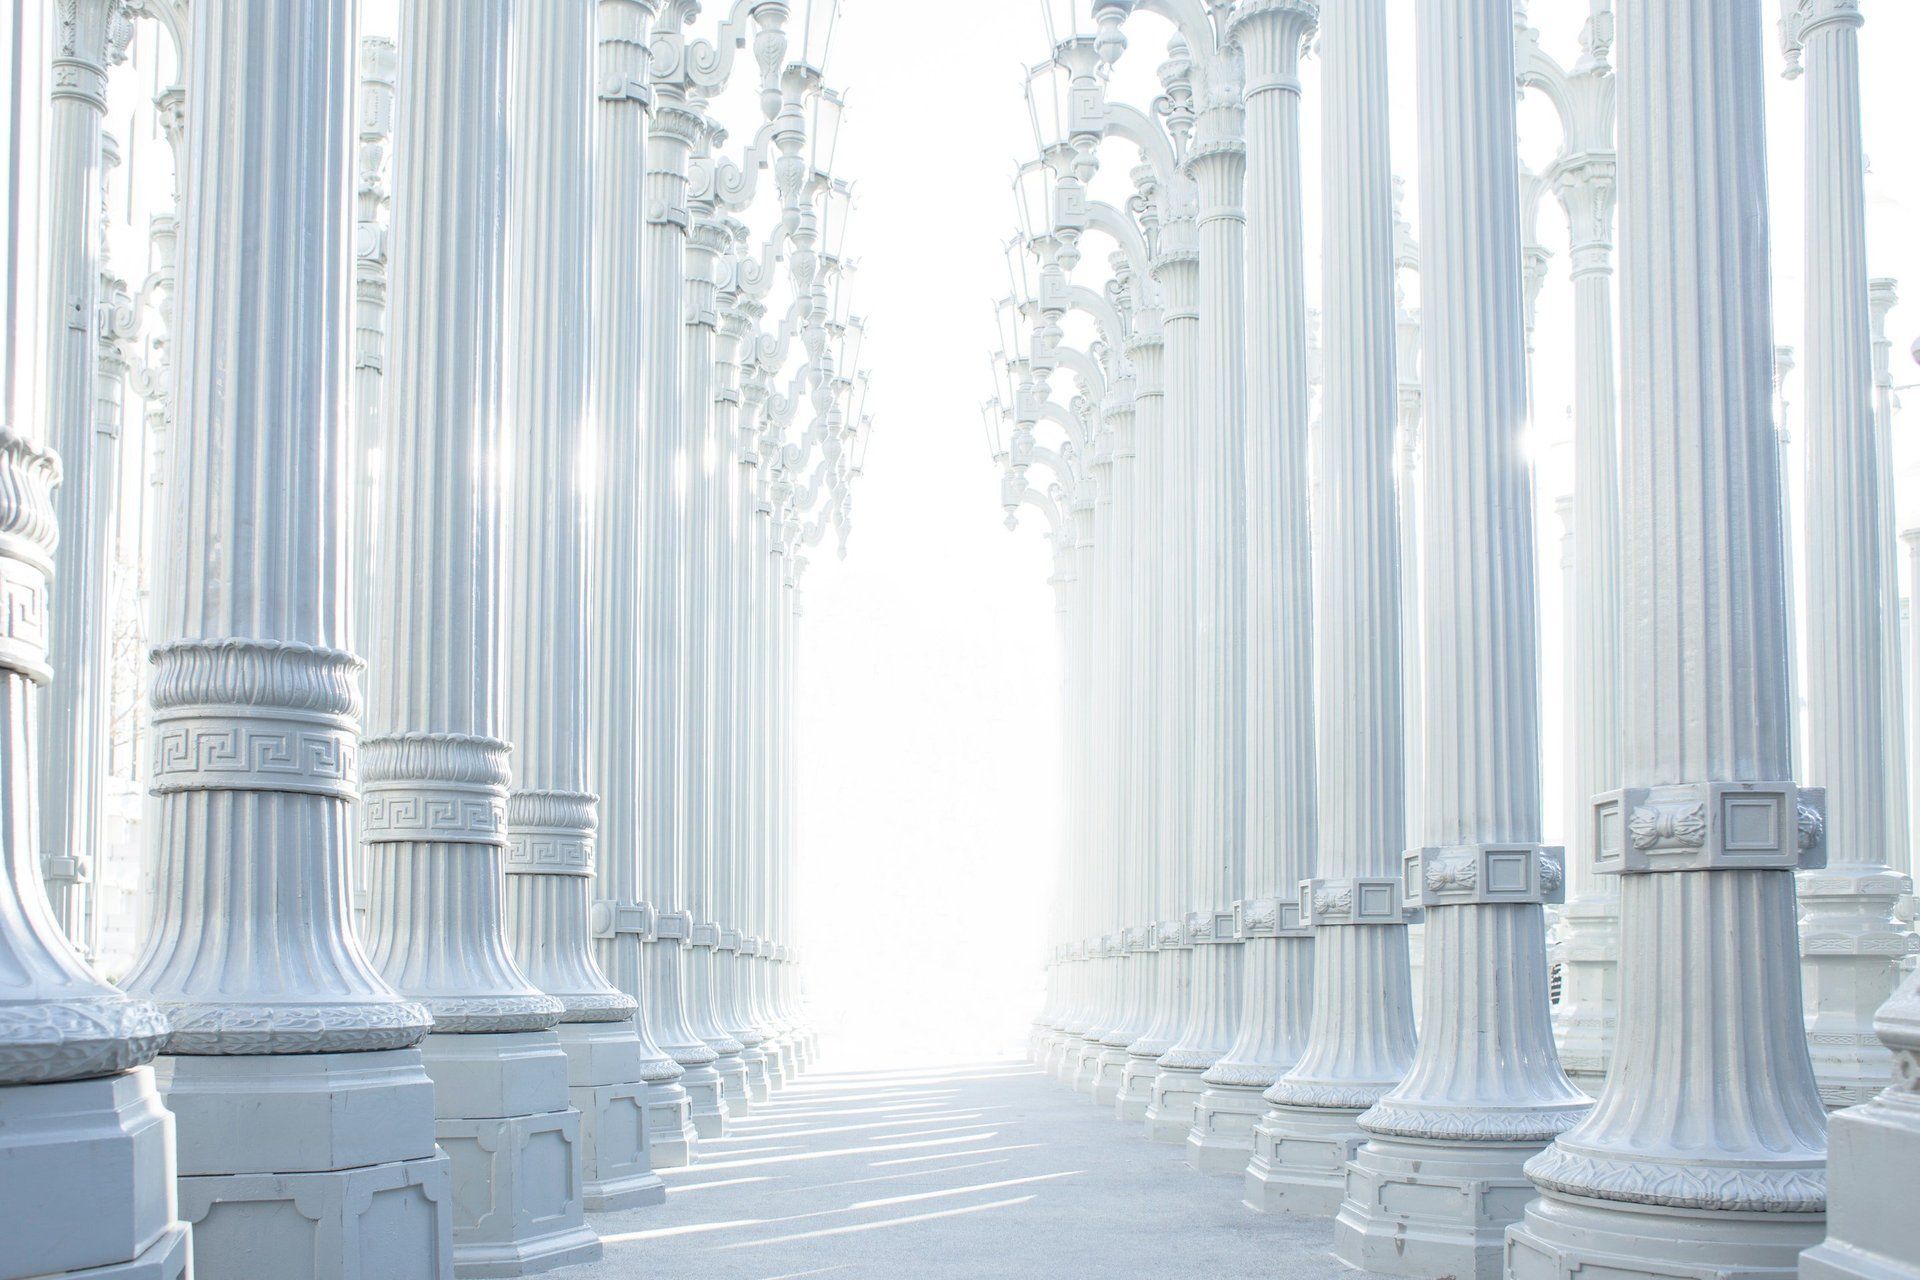 2 rows of white stone columns